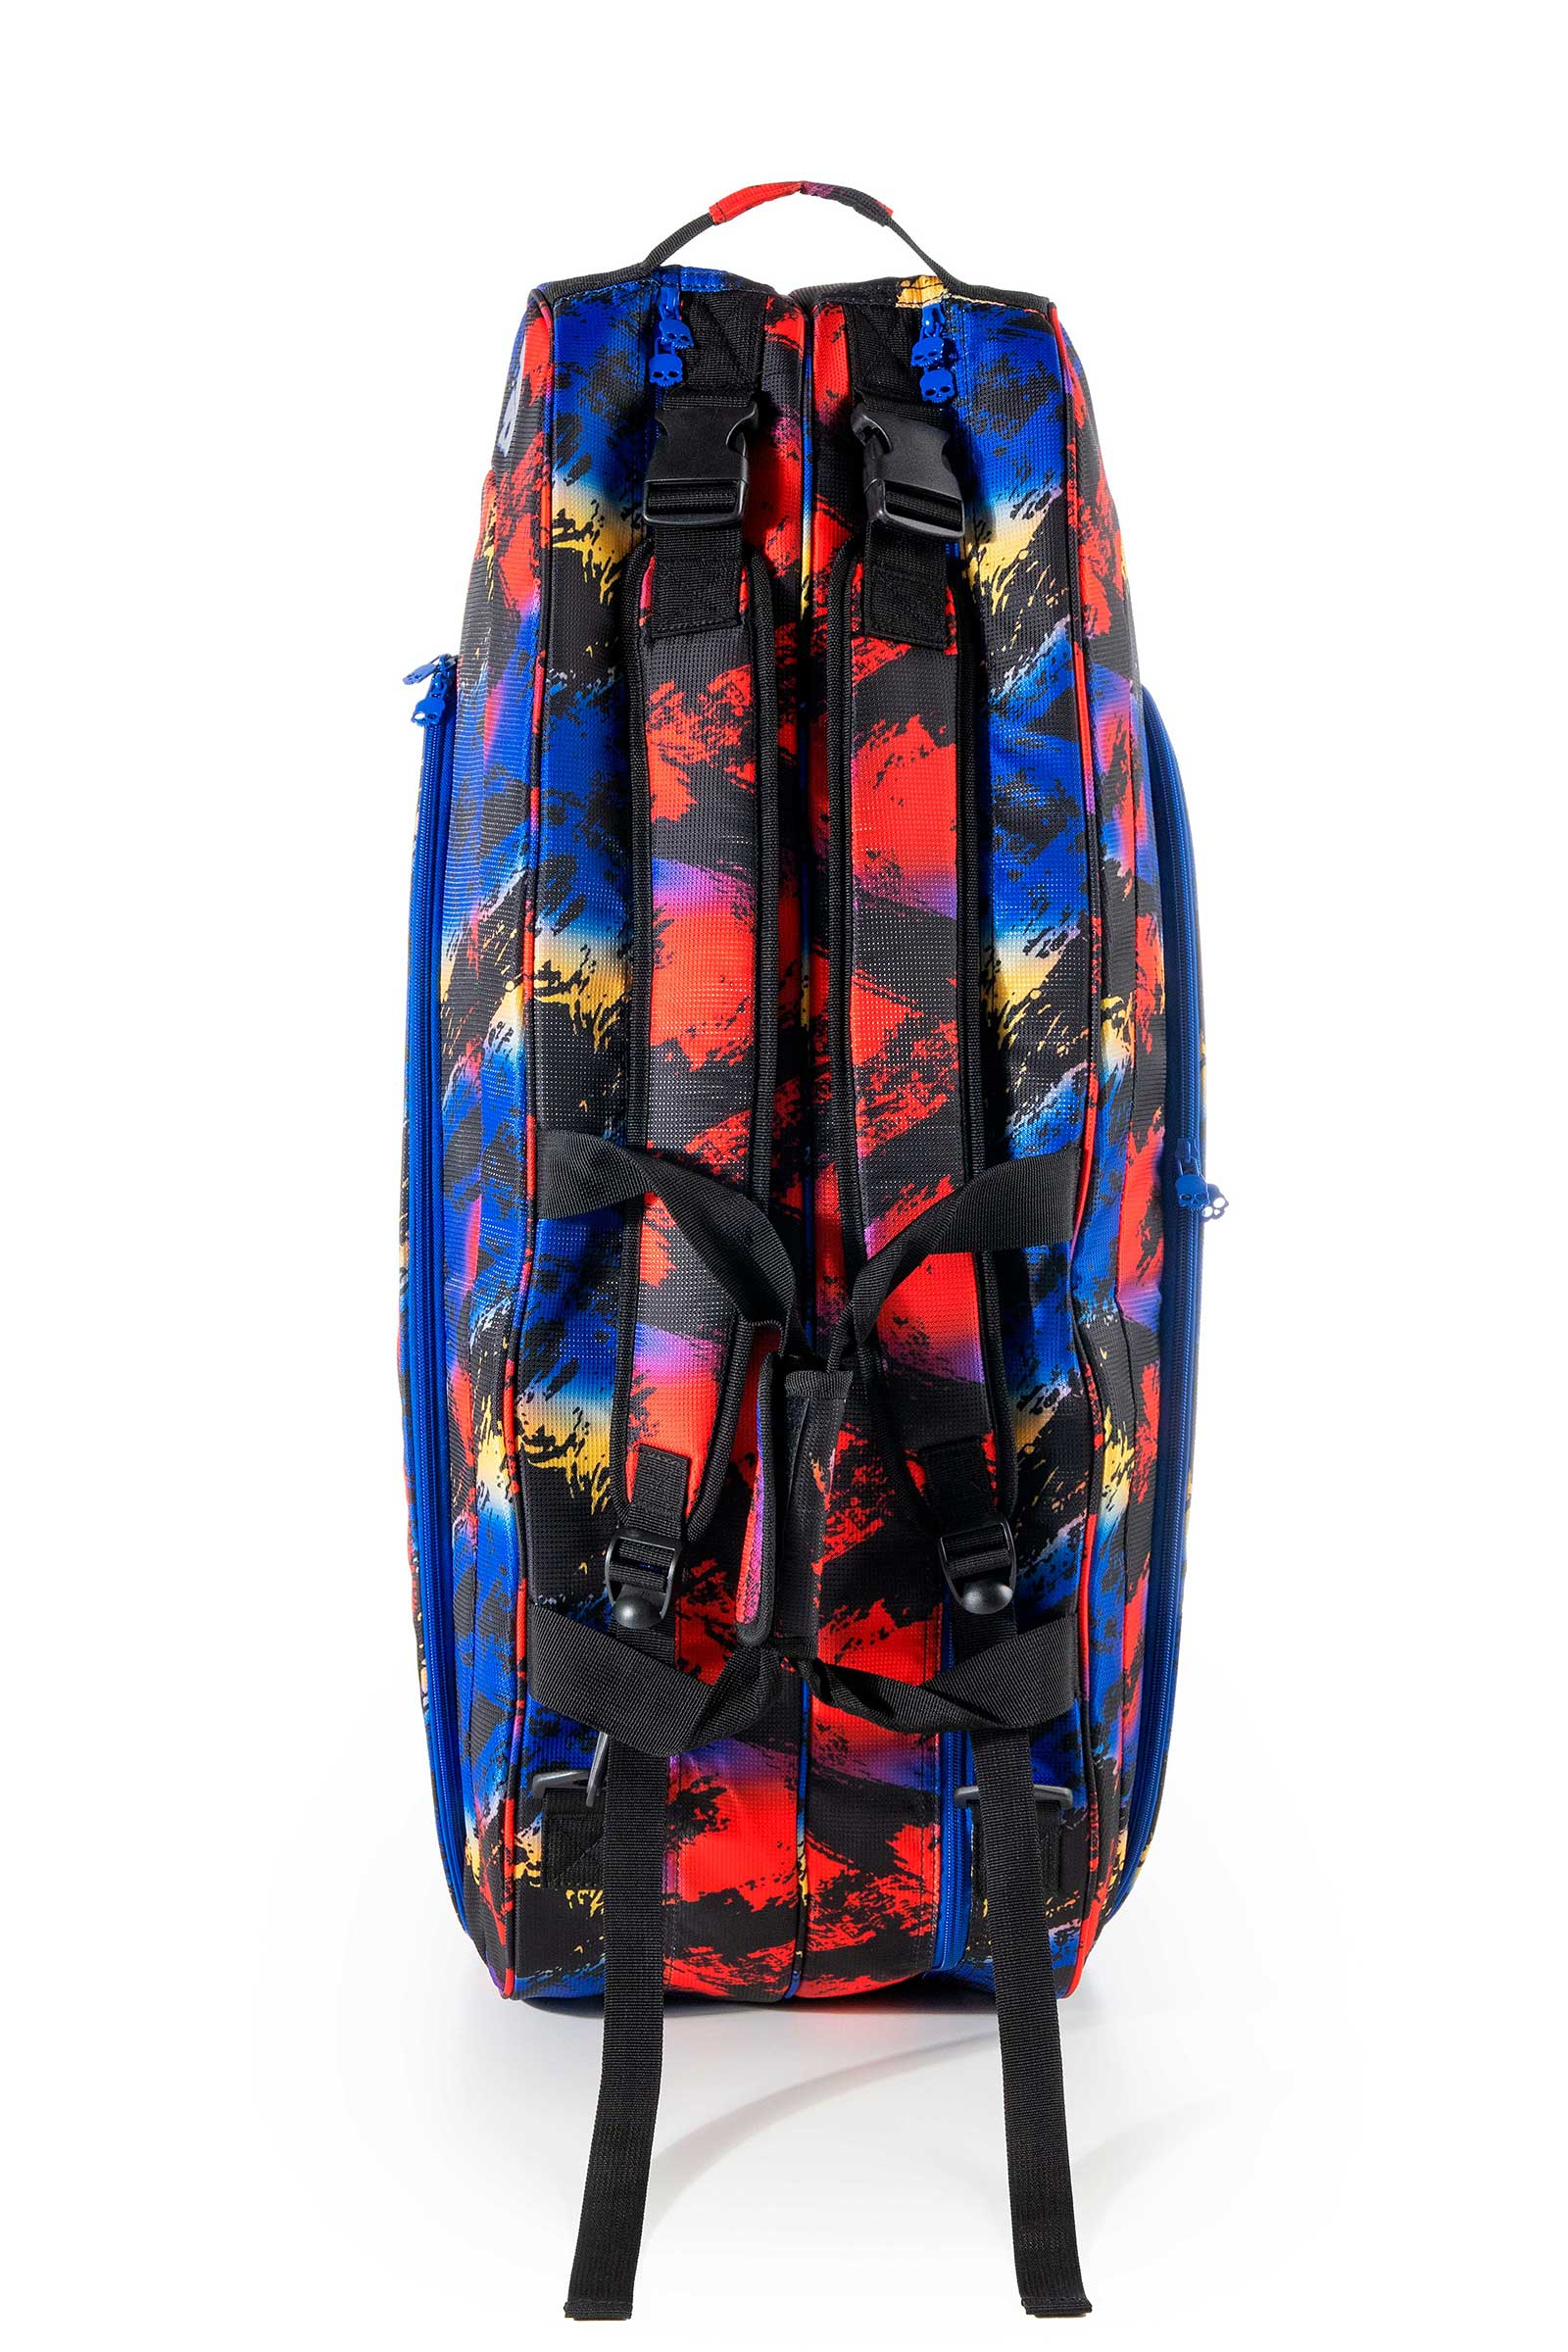 RANDOM  9 RACKETS BAG PRINCE BY HYDROGEN - BLACK,RED,BLUE - Hydrogen - Luxury Sportwear